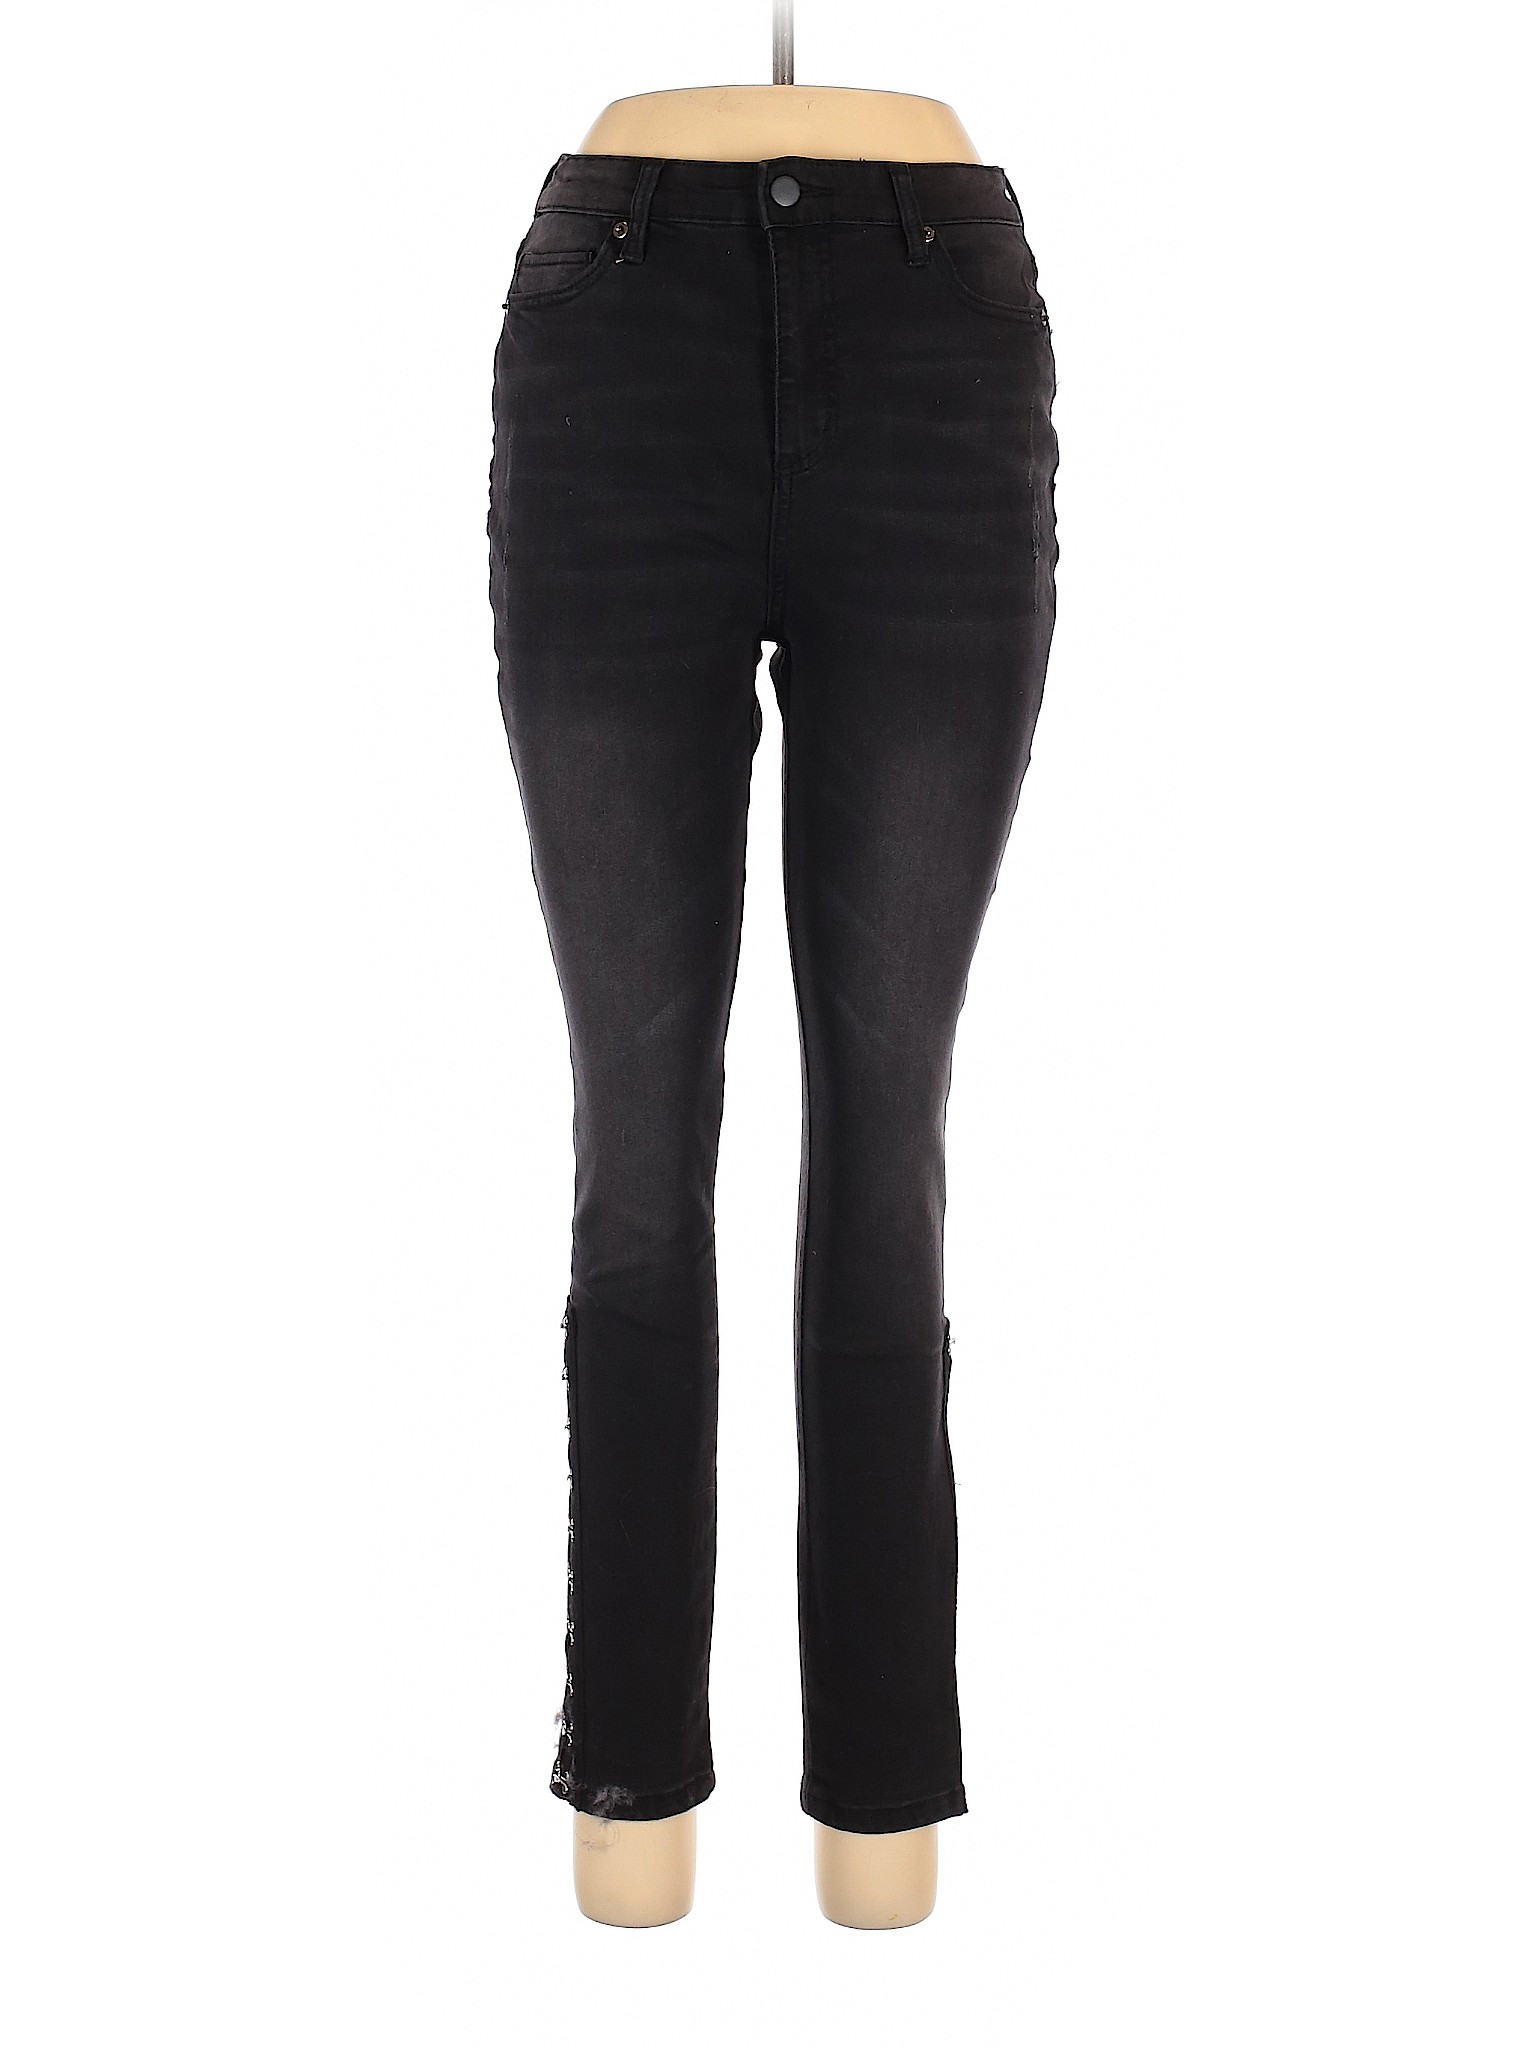 Fashion Nova Women Black Jeans 7 | eBay